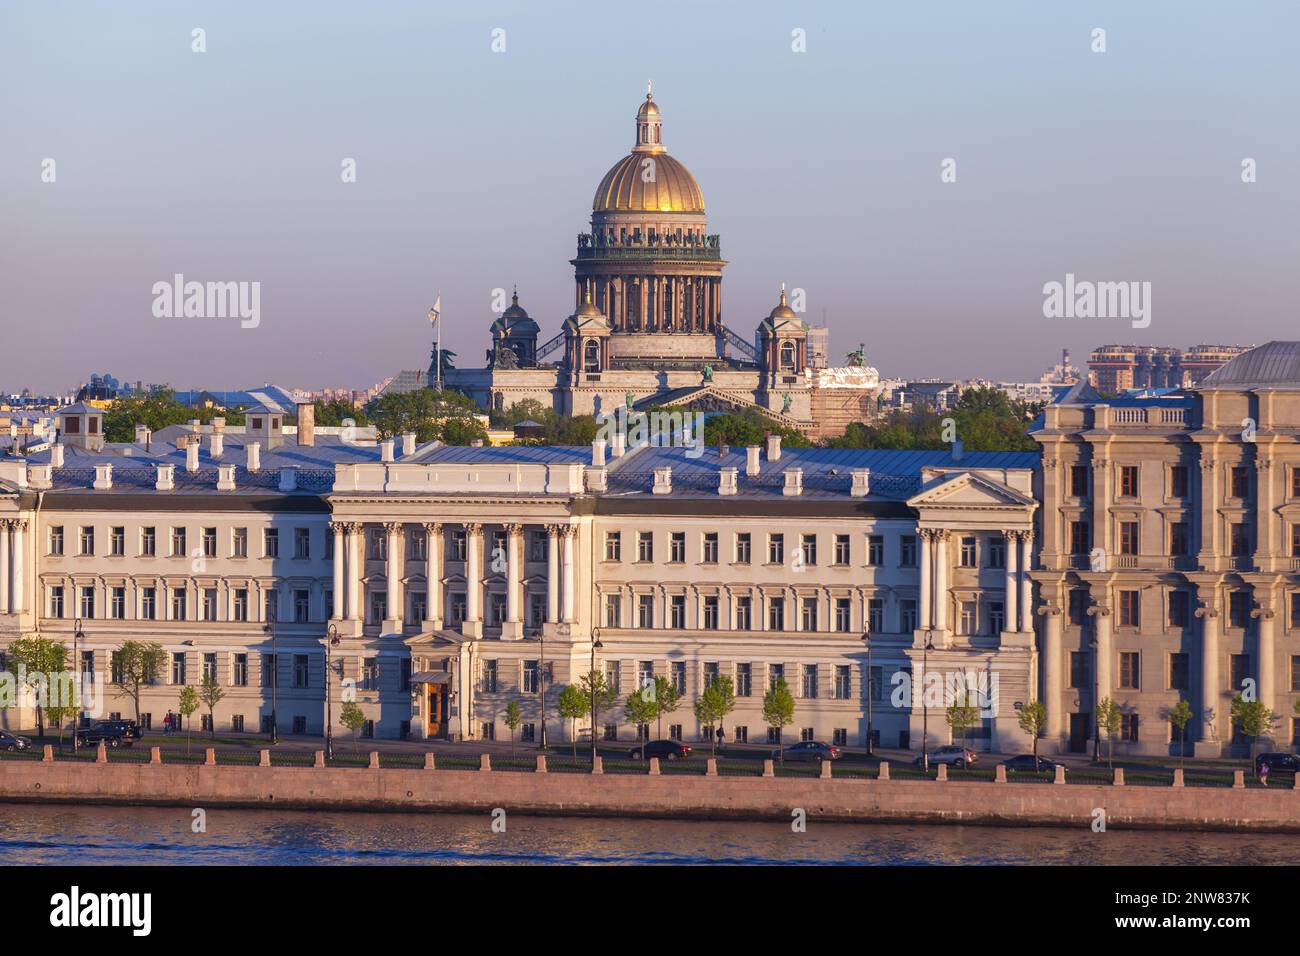 Paesaggio urbano di San Pietroburgo, Russia. La costa del fiume Neva, la cupola dorata della Cattedrale di Sant'Isacco è sullo sfondo Foto Stock